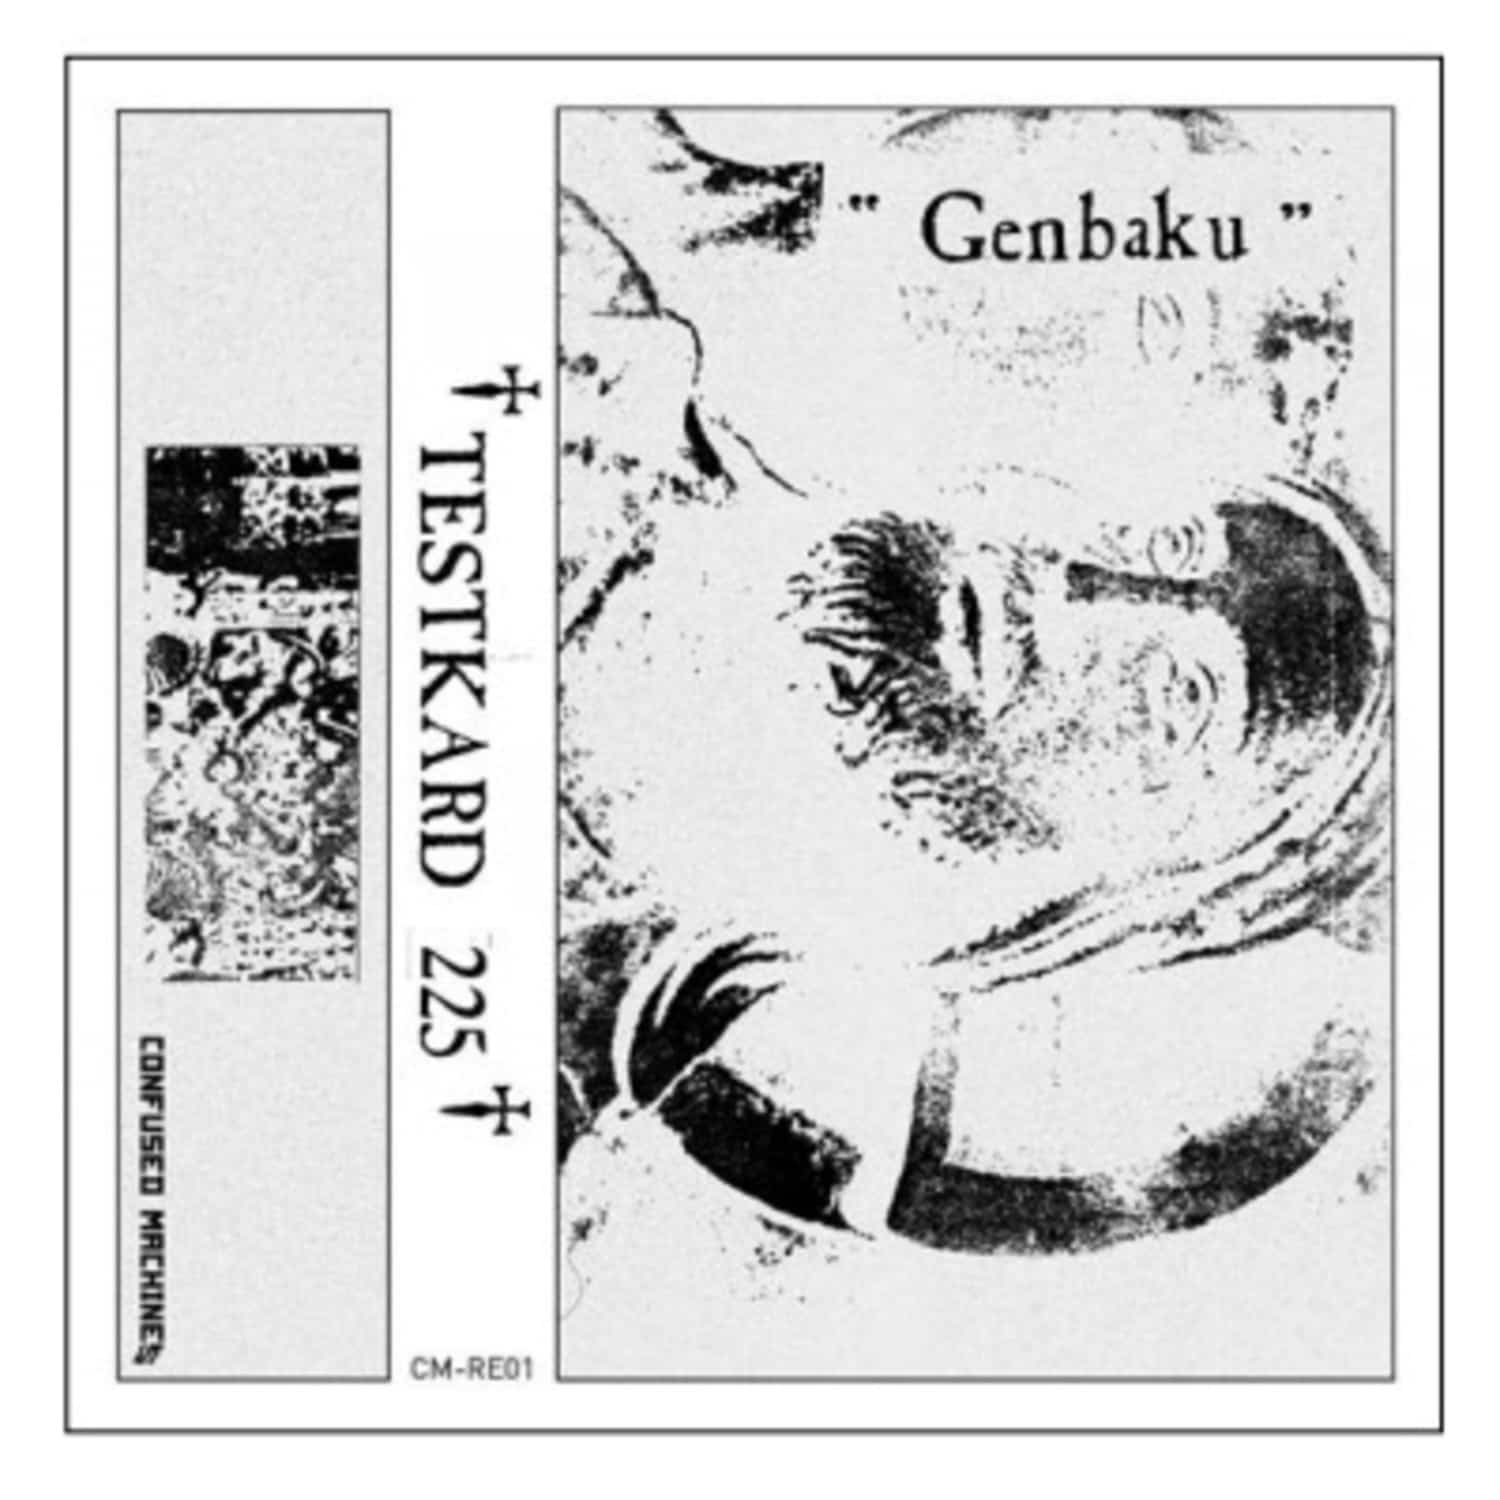 Genbaku - TESTKARD 225 